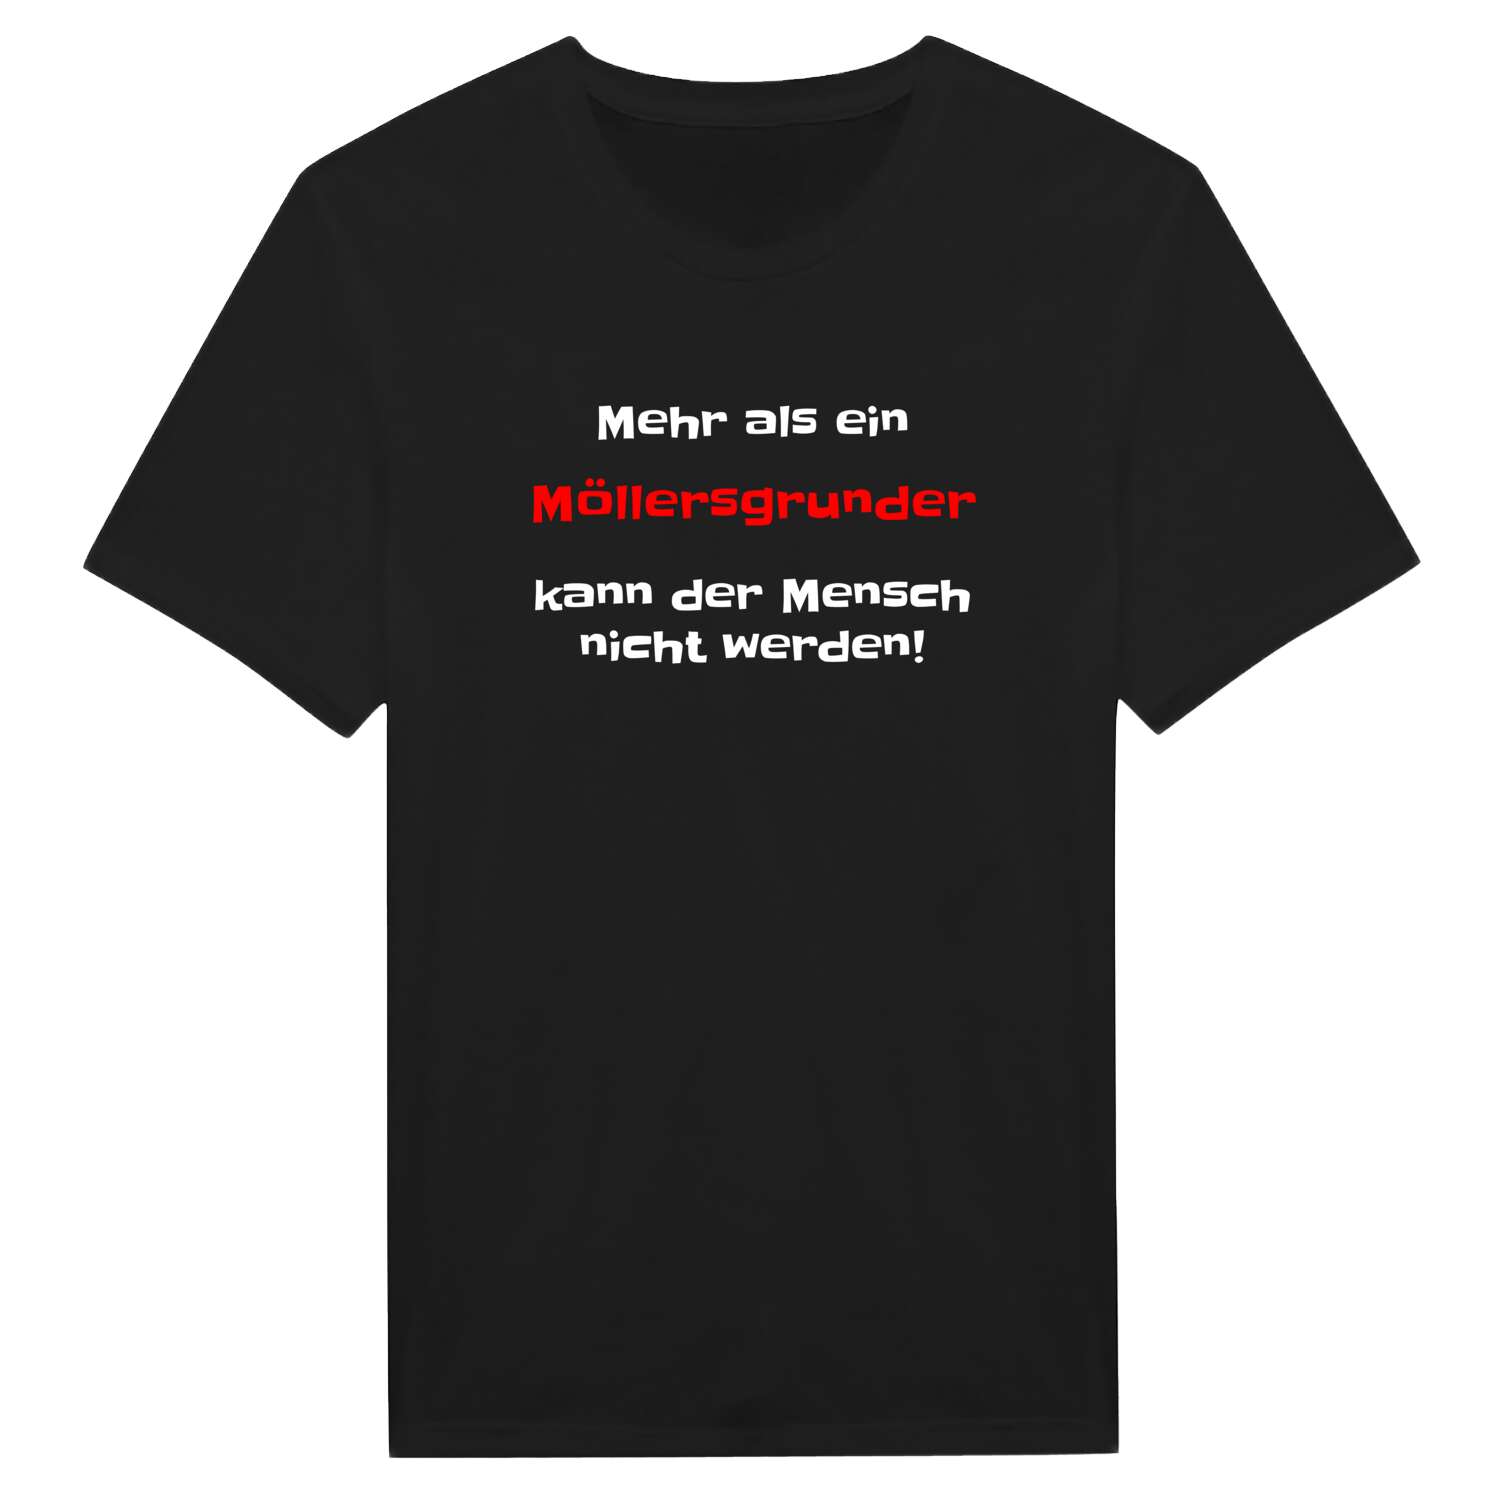 Möllersgrund T-Shirt »Mehr als ein«